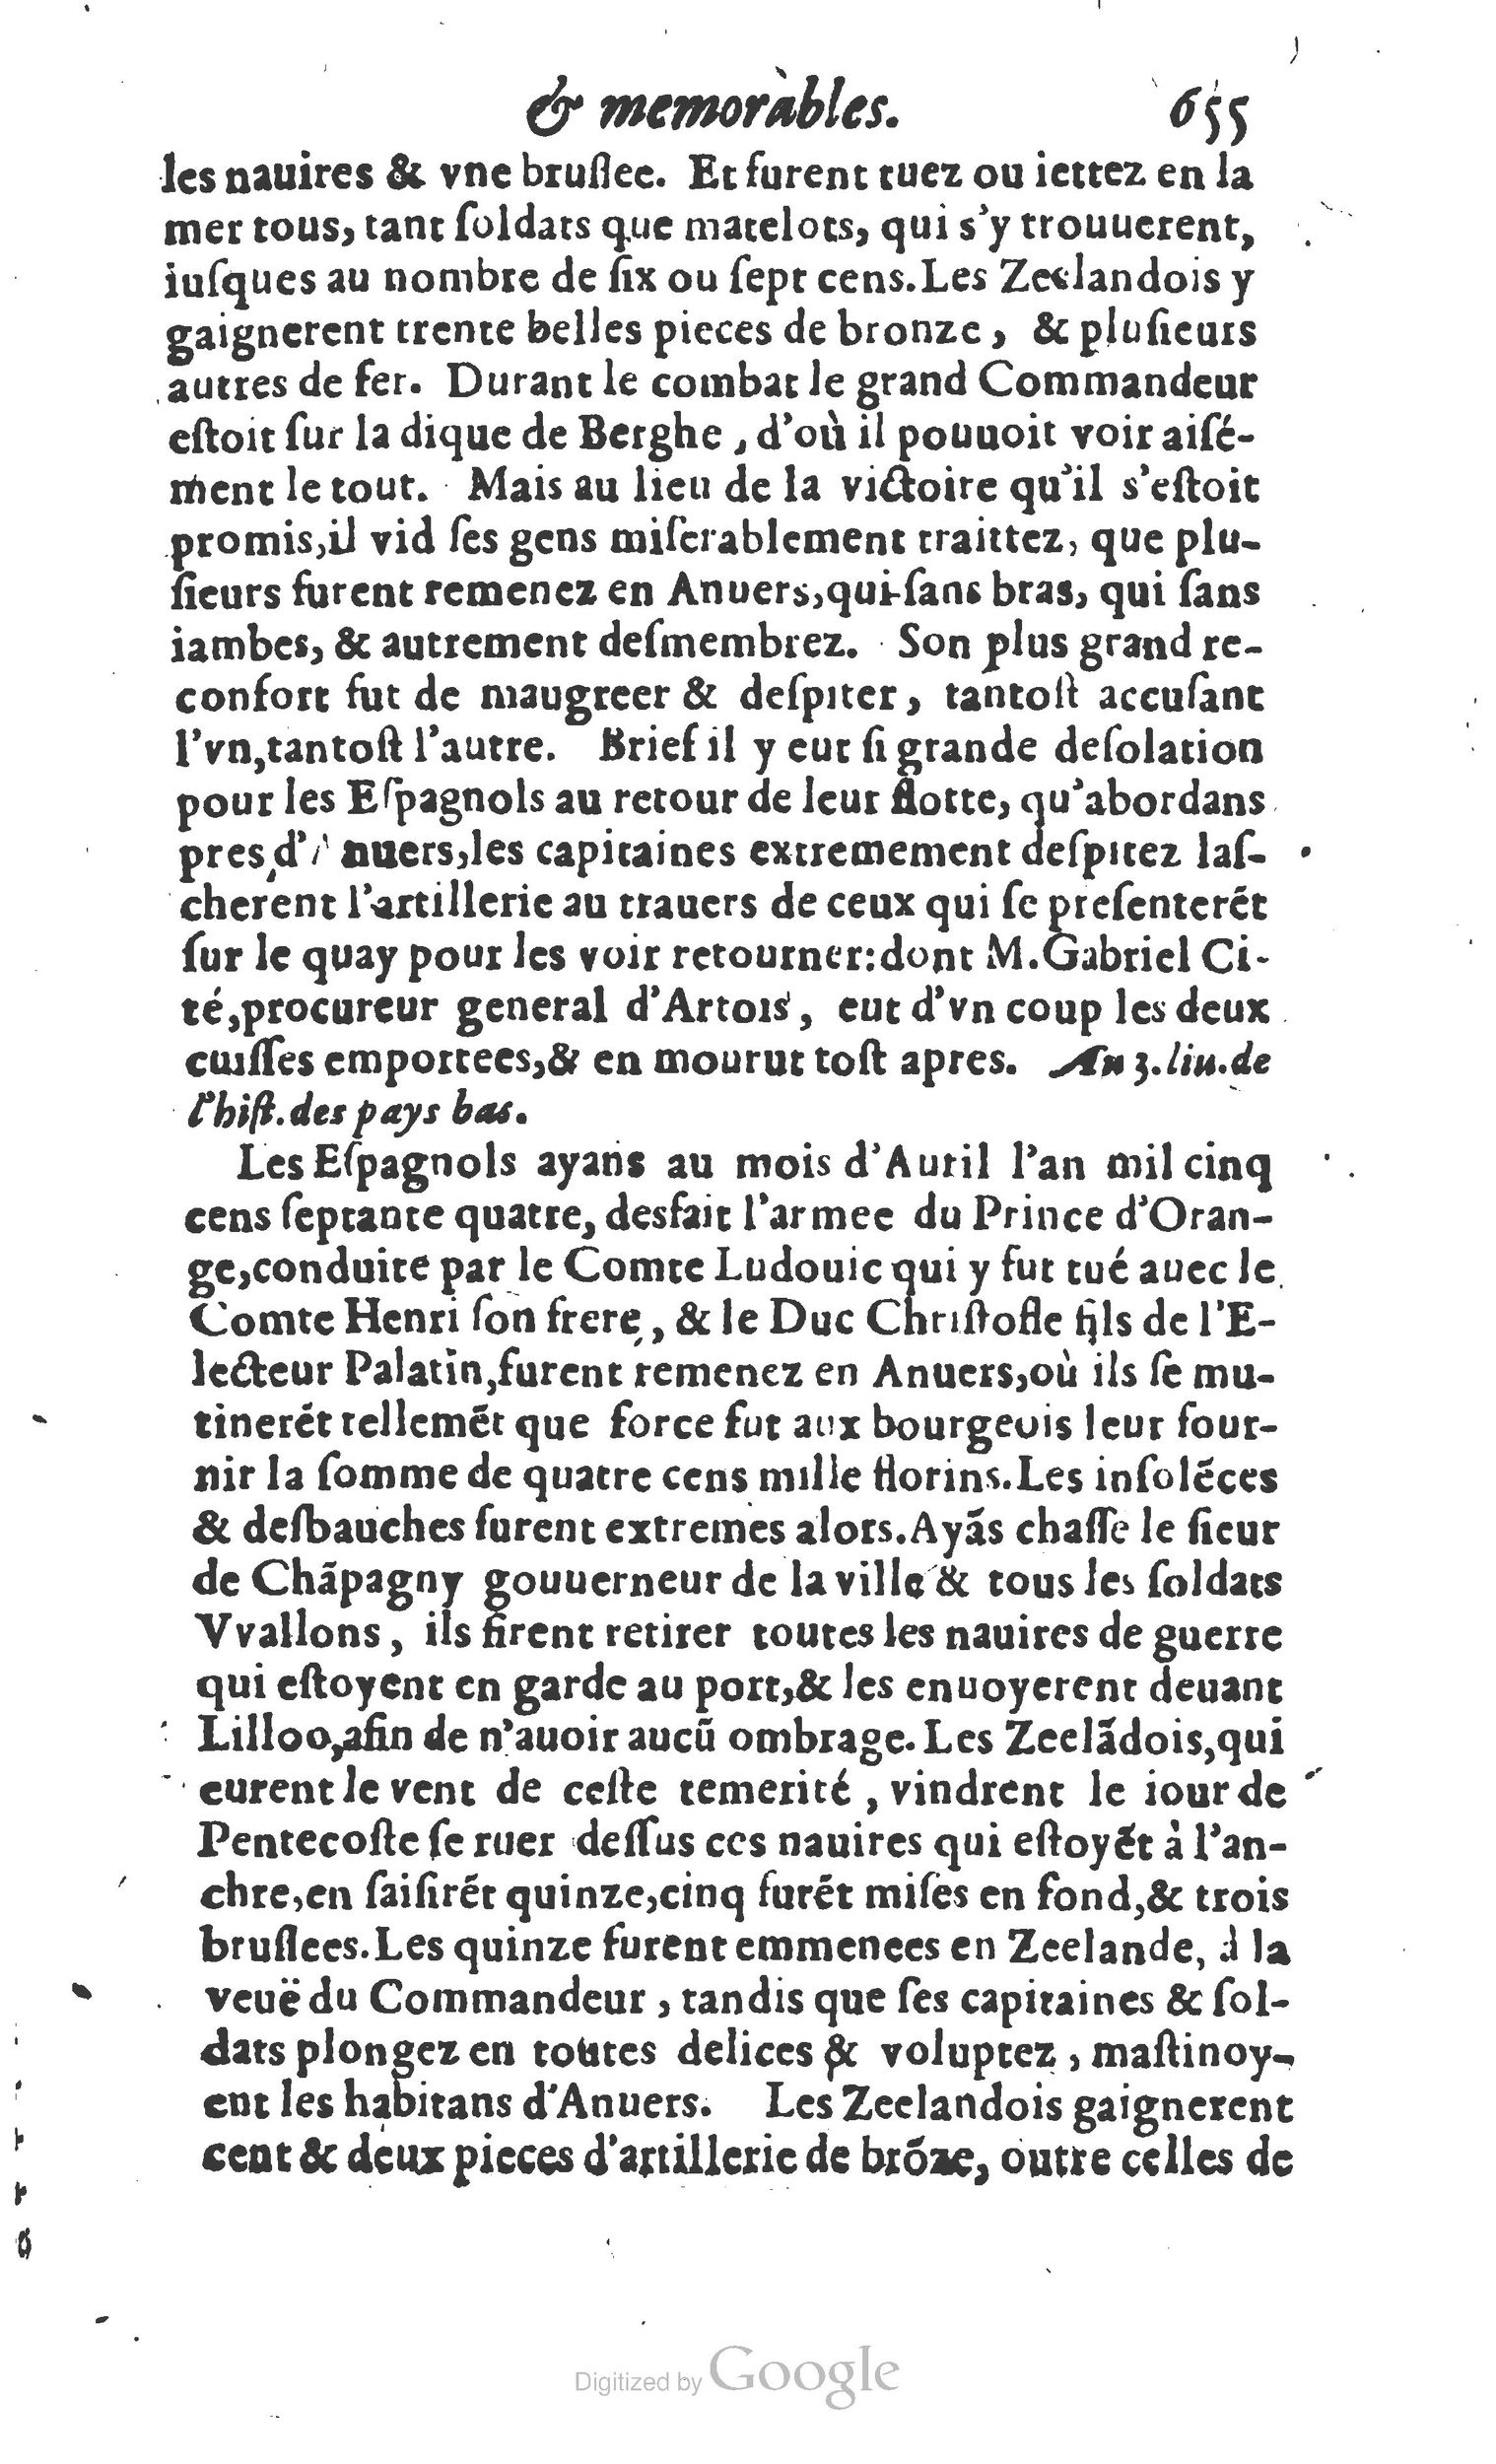 1610 Trésor d’histoires admirables et mémorables de nostre temps Marceau Princeton_Page_0676.jpg